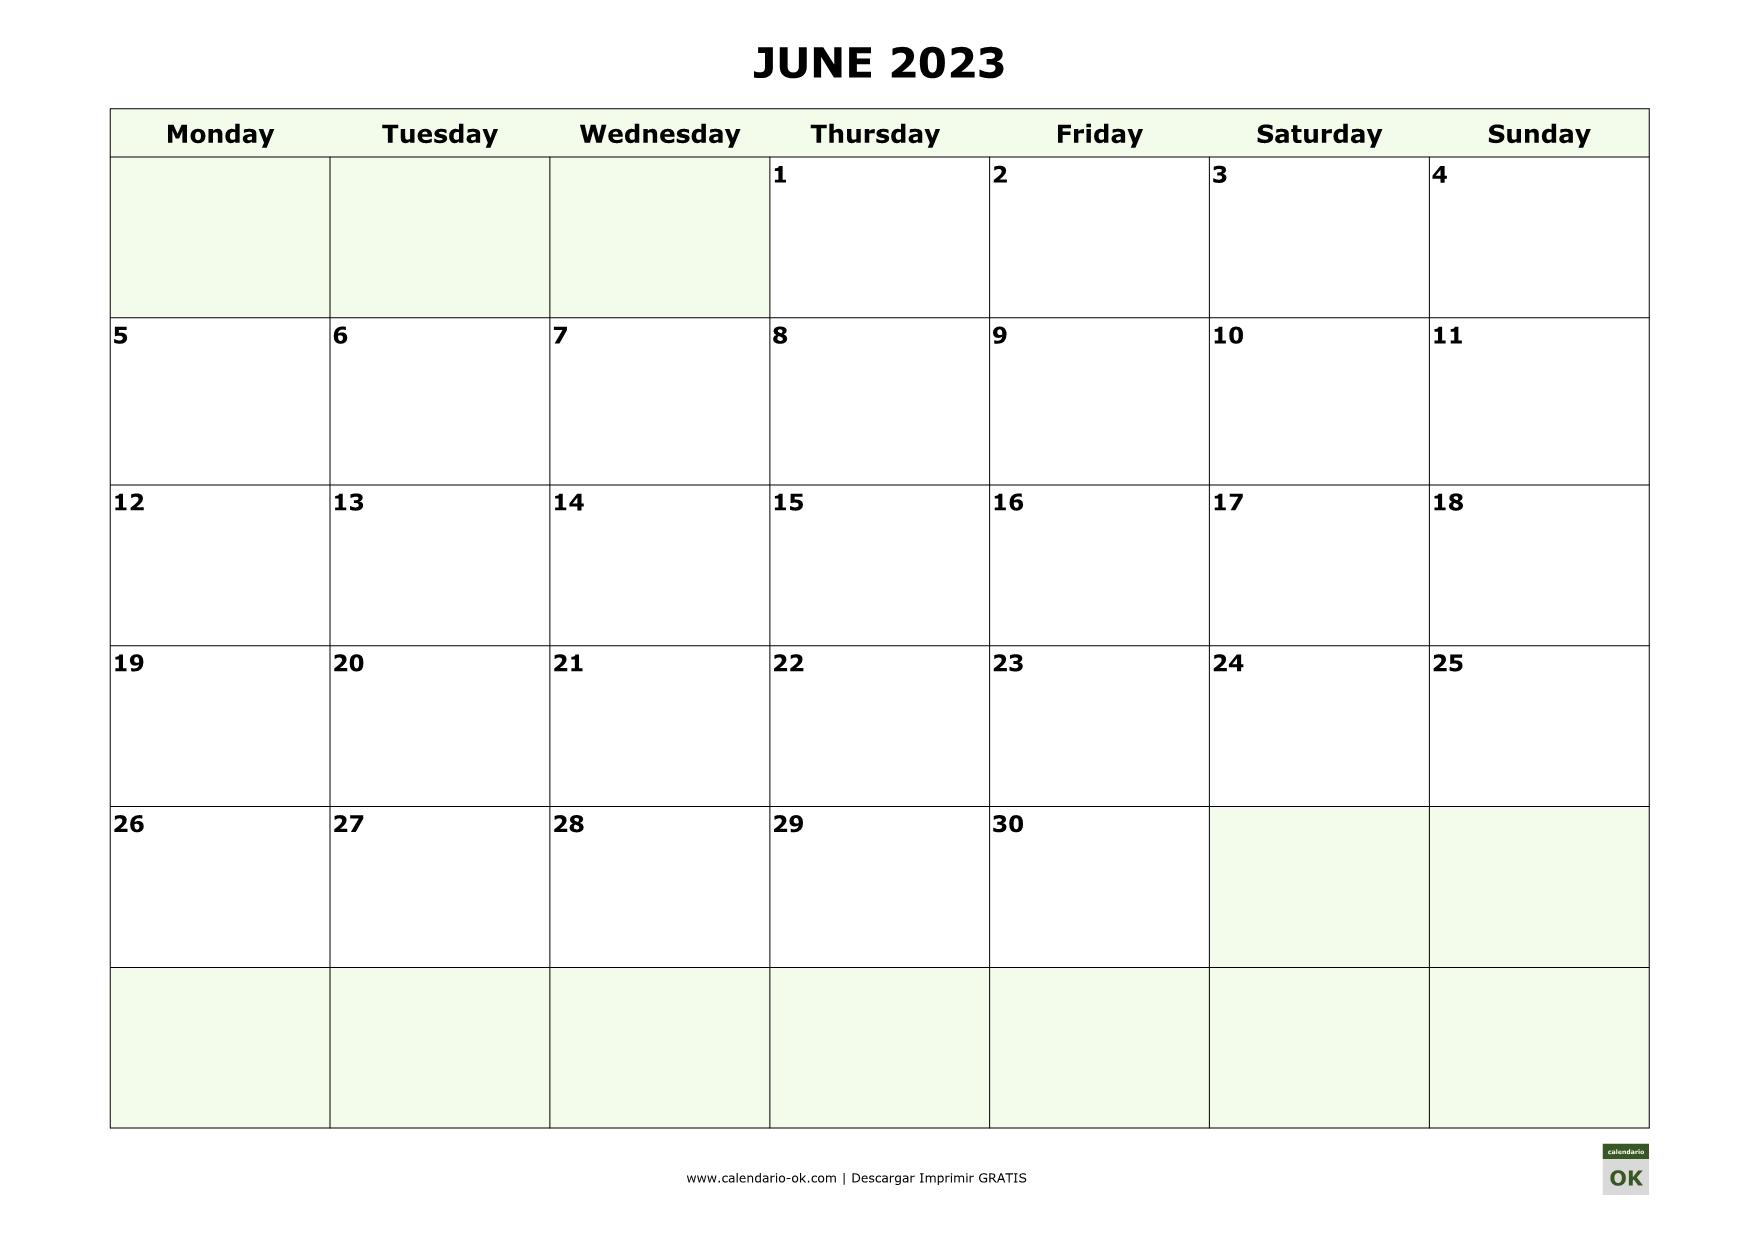 JUNIO 2023 calendario en INGLES